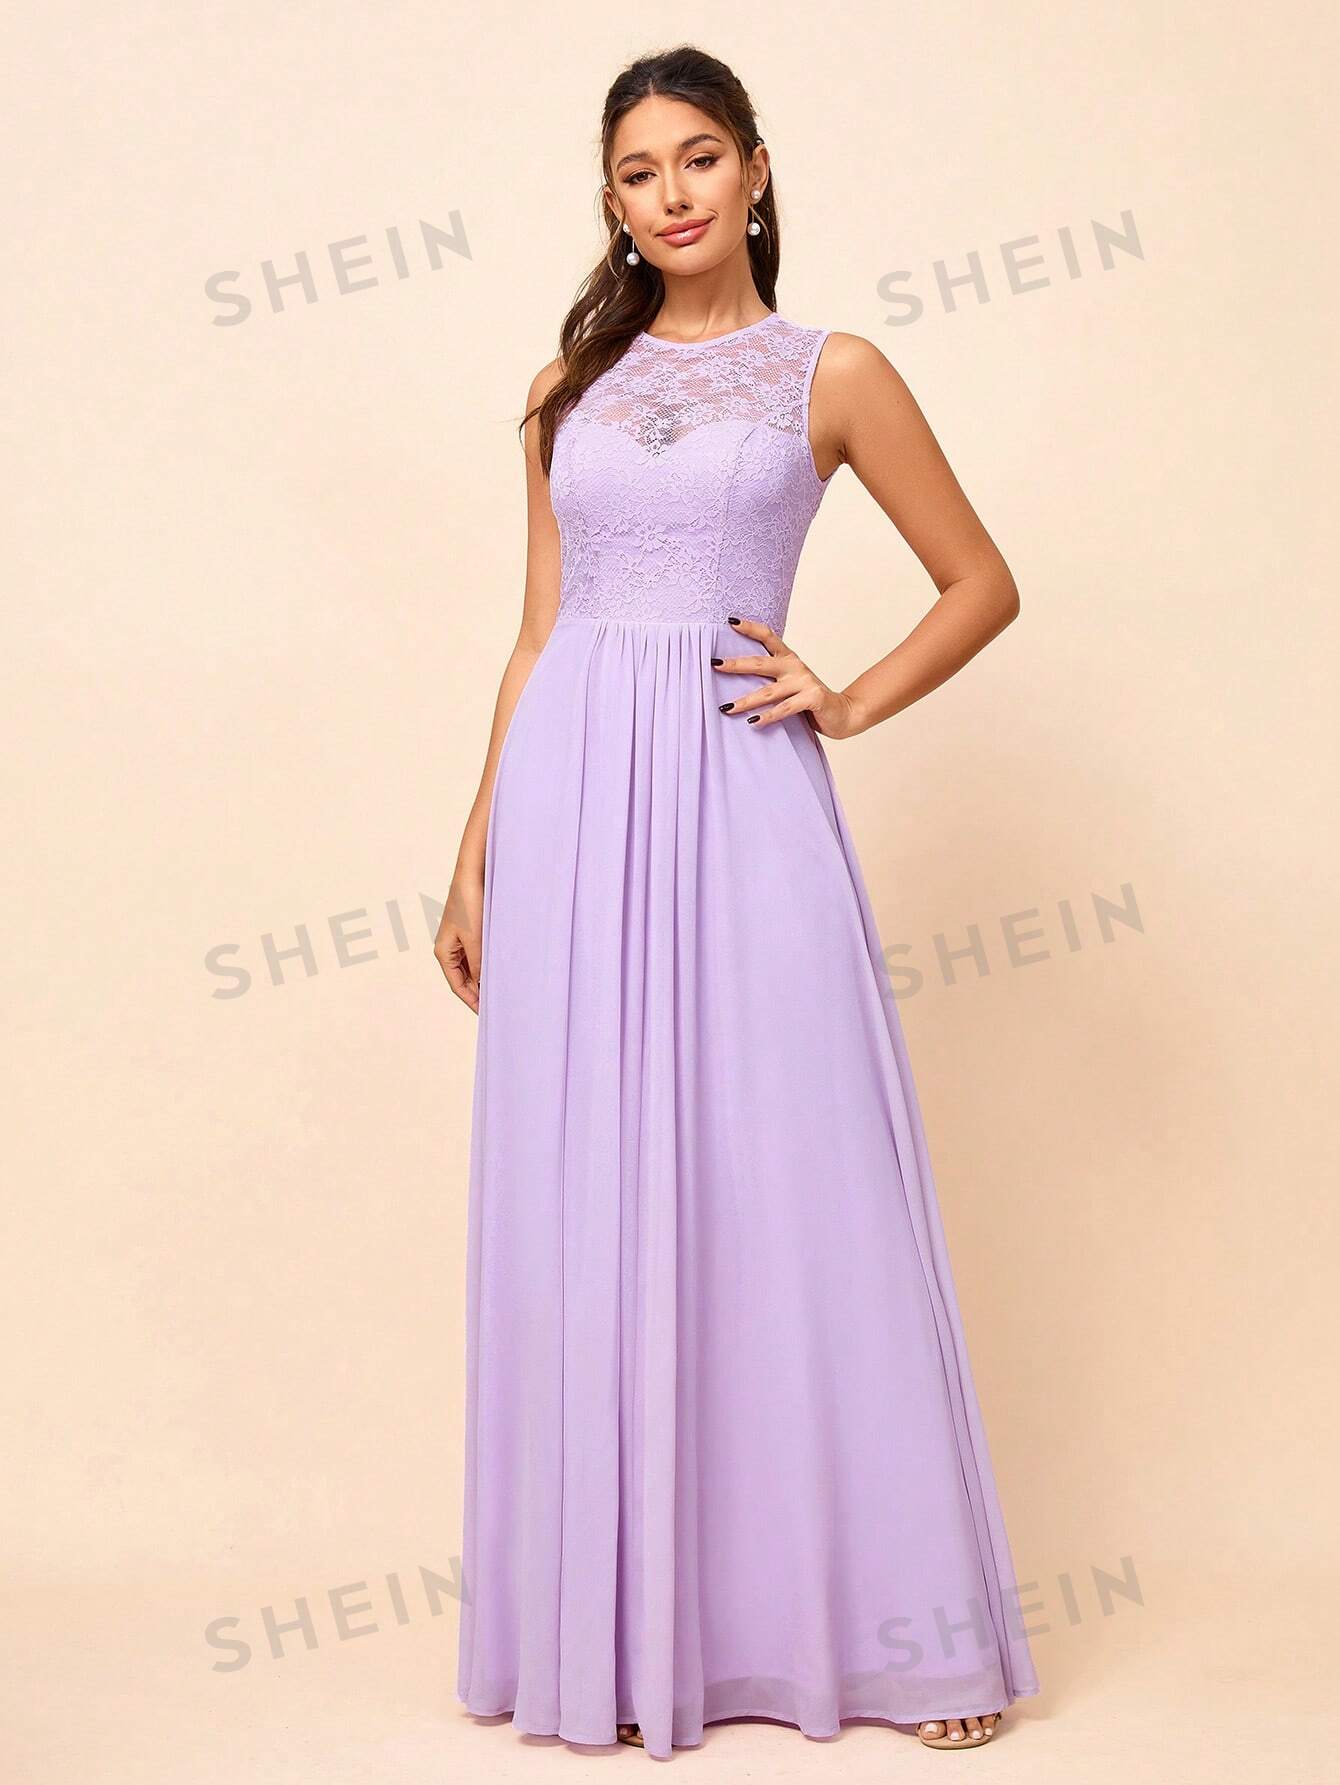 SHEIN Belle Женское кружевное платье макси без рукавов с круглым вырезом (для взрослых), фиолетовый цена и фото